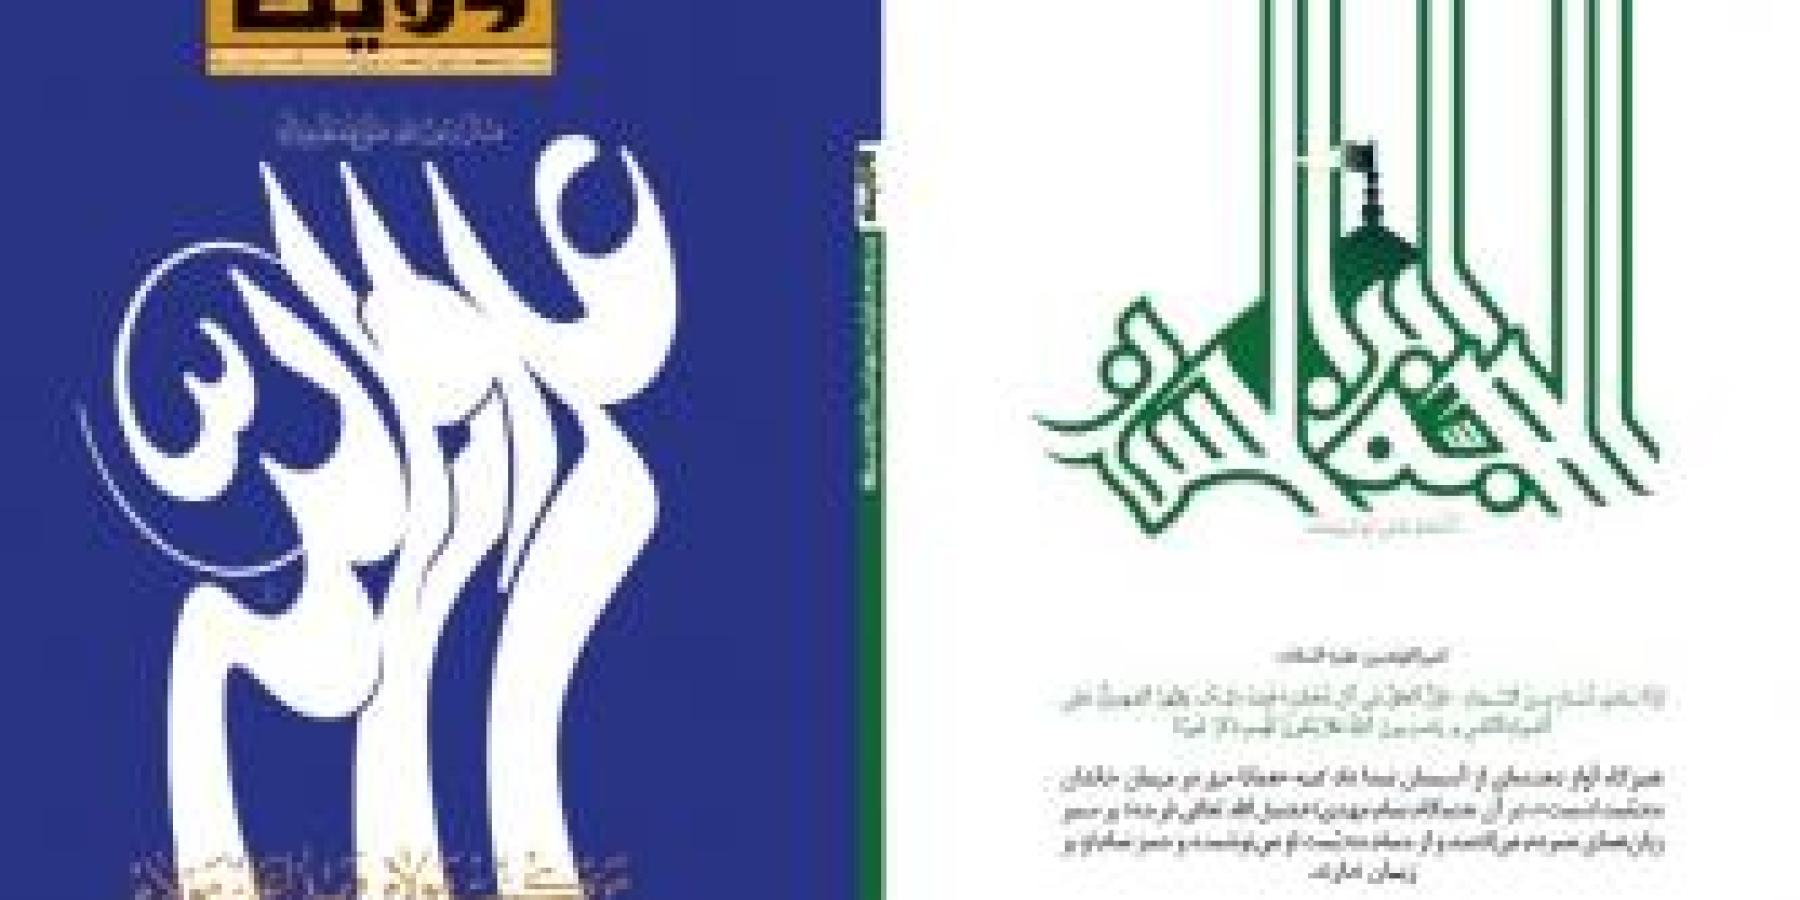 قسم الاعلام في العتبة العلوية المقدسة يصدر العدد الثاني من مجلة الولاية باللغة الفارسية